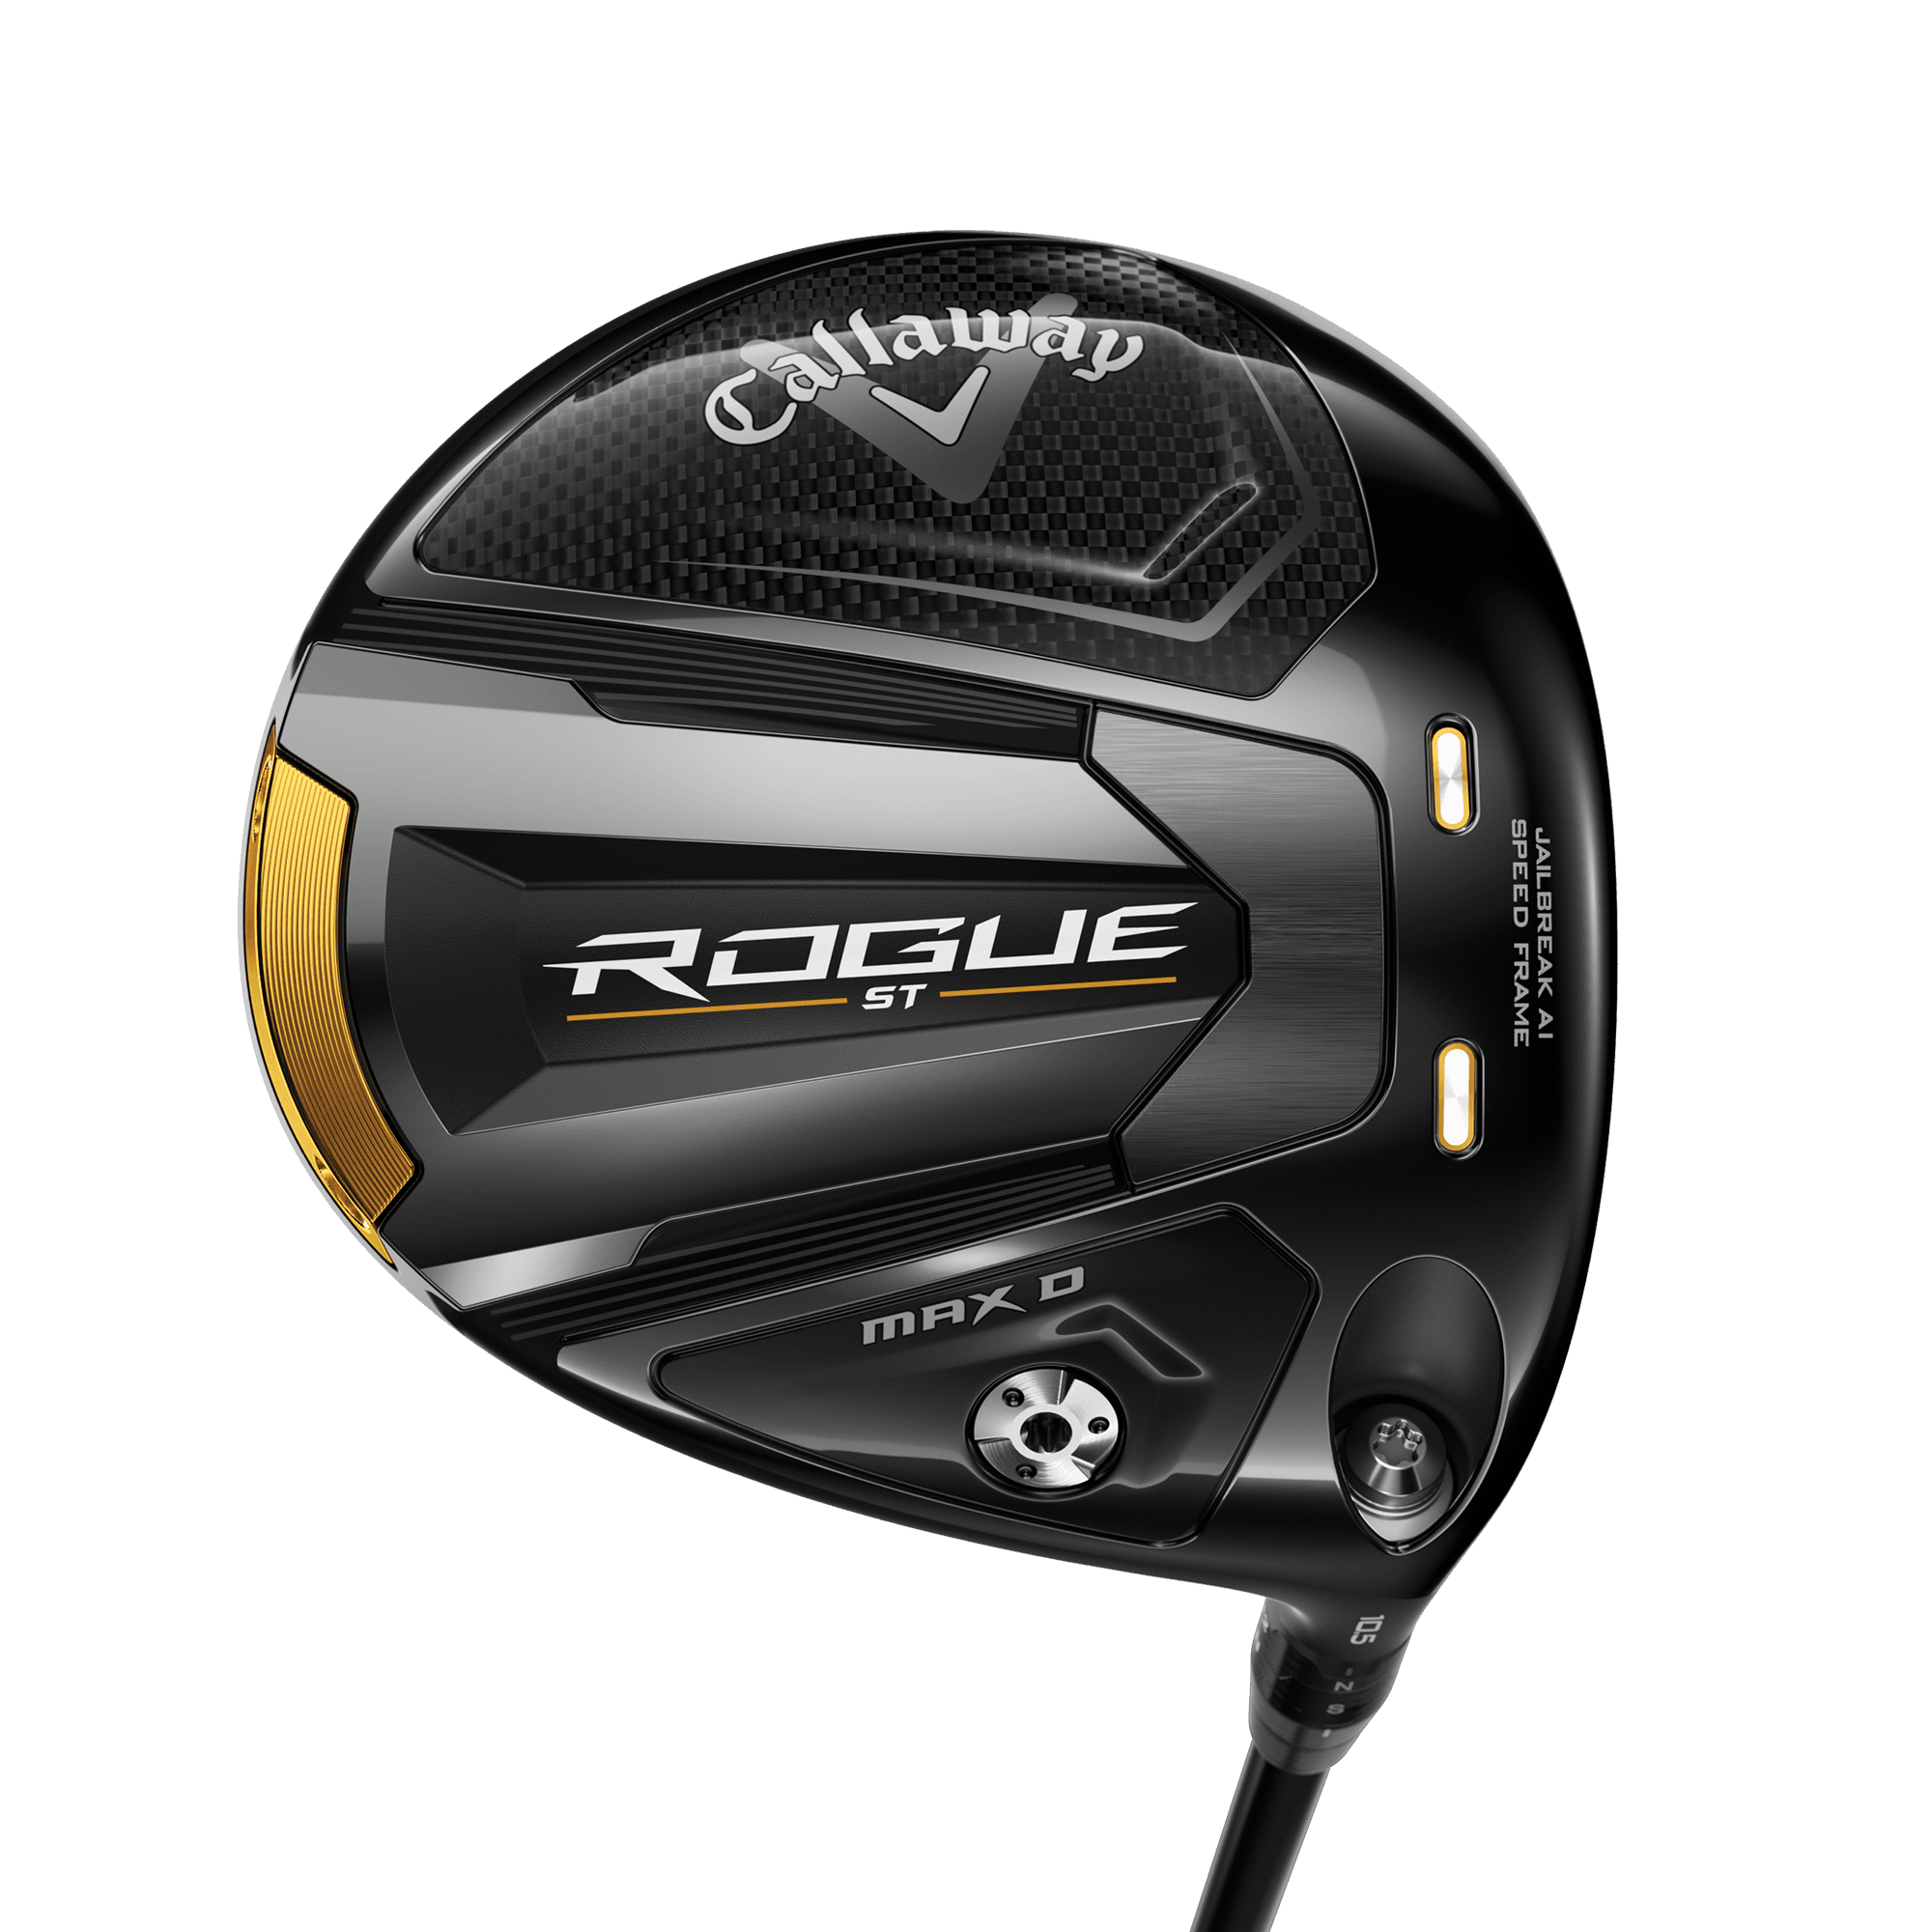 Rogue ST MAX D Drivers | Callaway Golf | Specs & Reviews